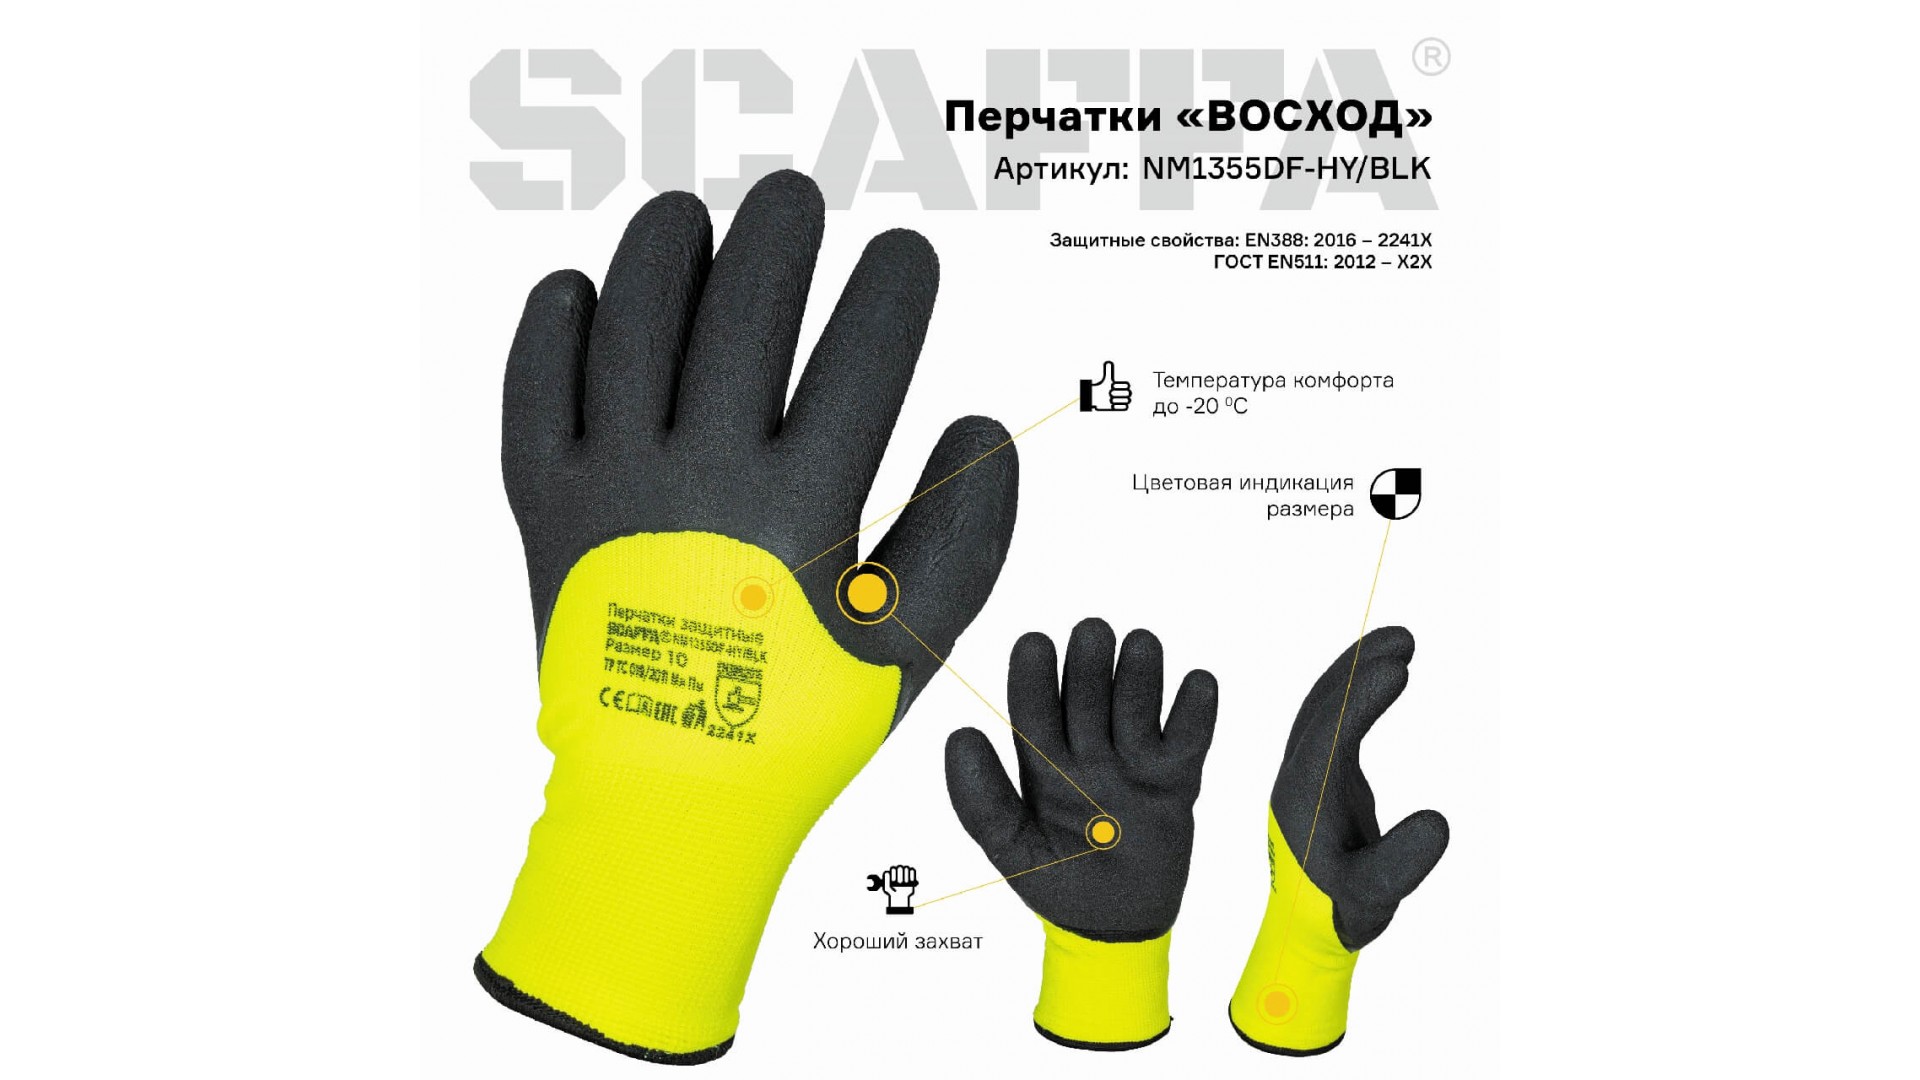 Перчатки ВОСХОД для защиты от пониженных температур